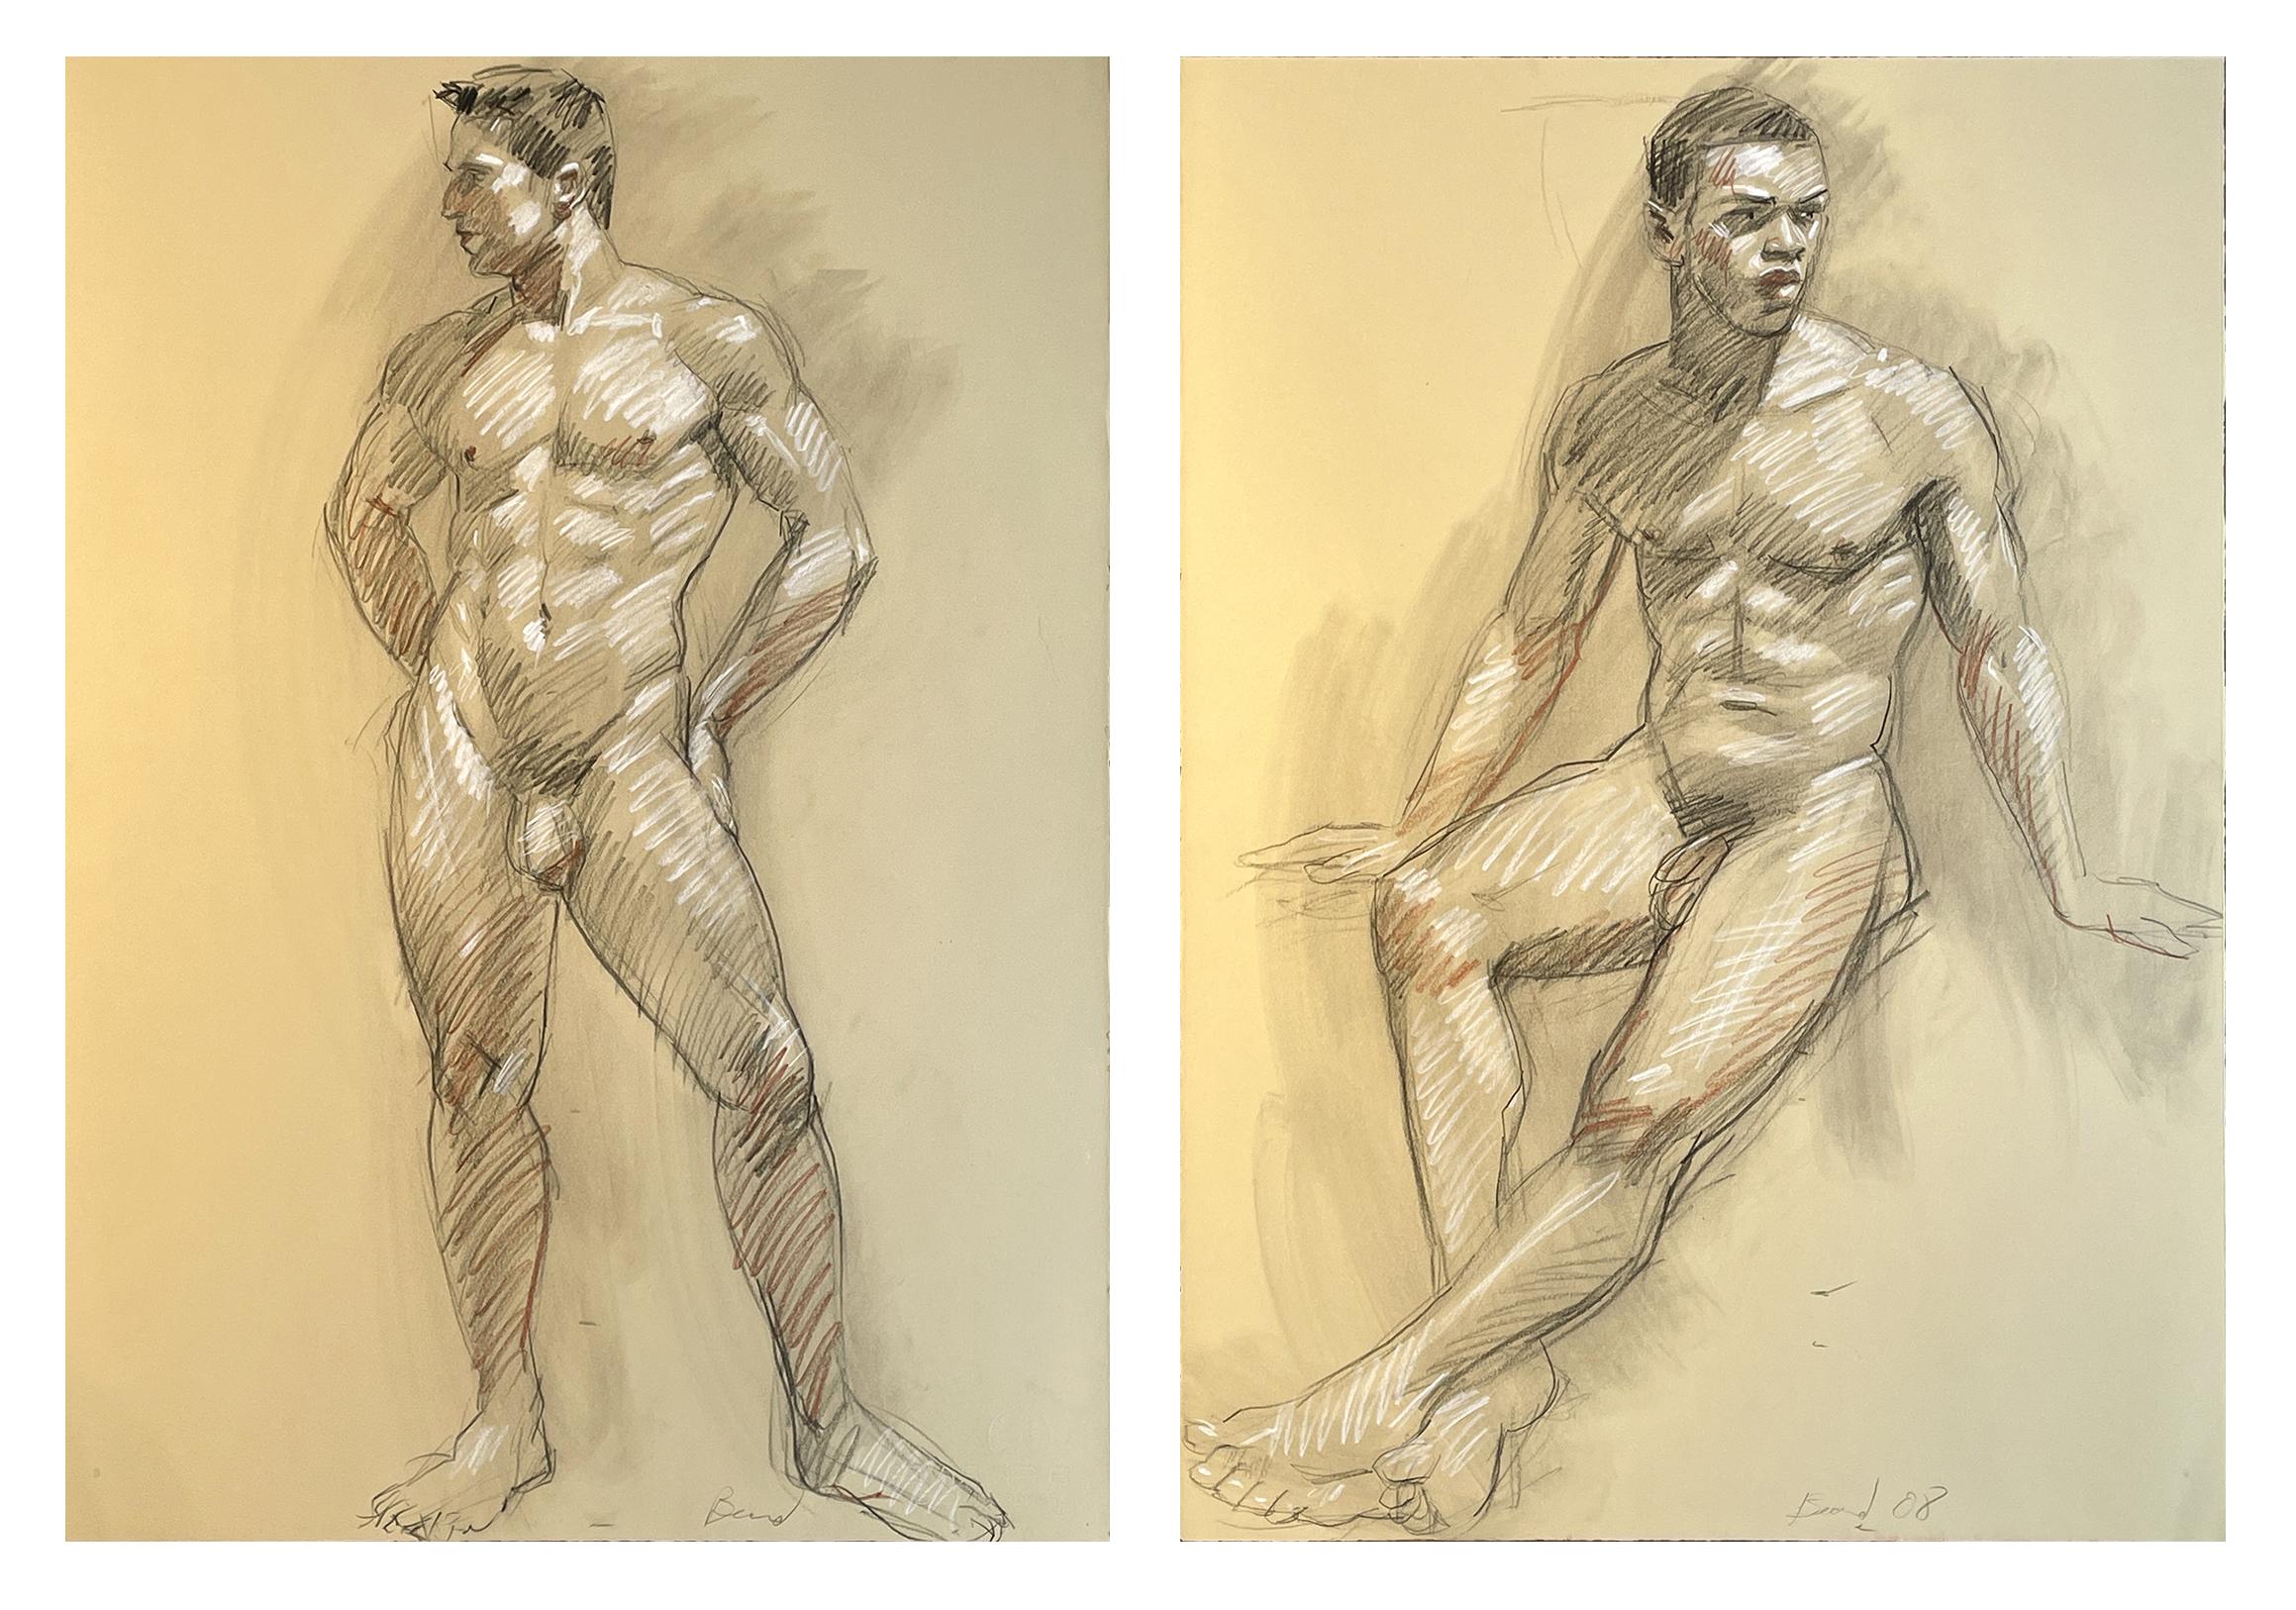 MB 824 (Doppelseitige figurale Zeichnung schöner nackter Männer von Mark Beard) 